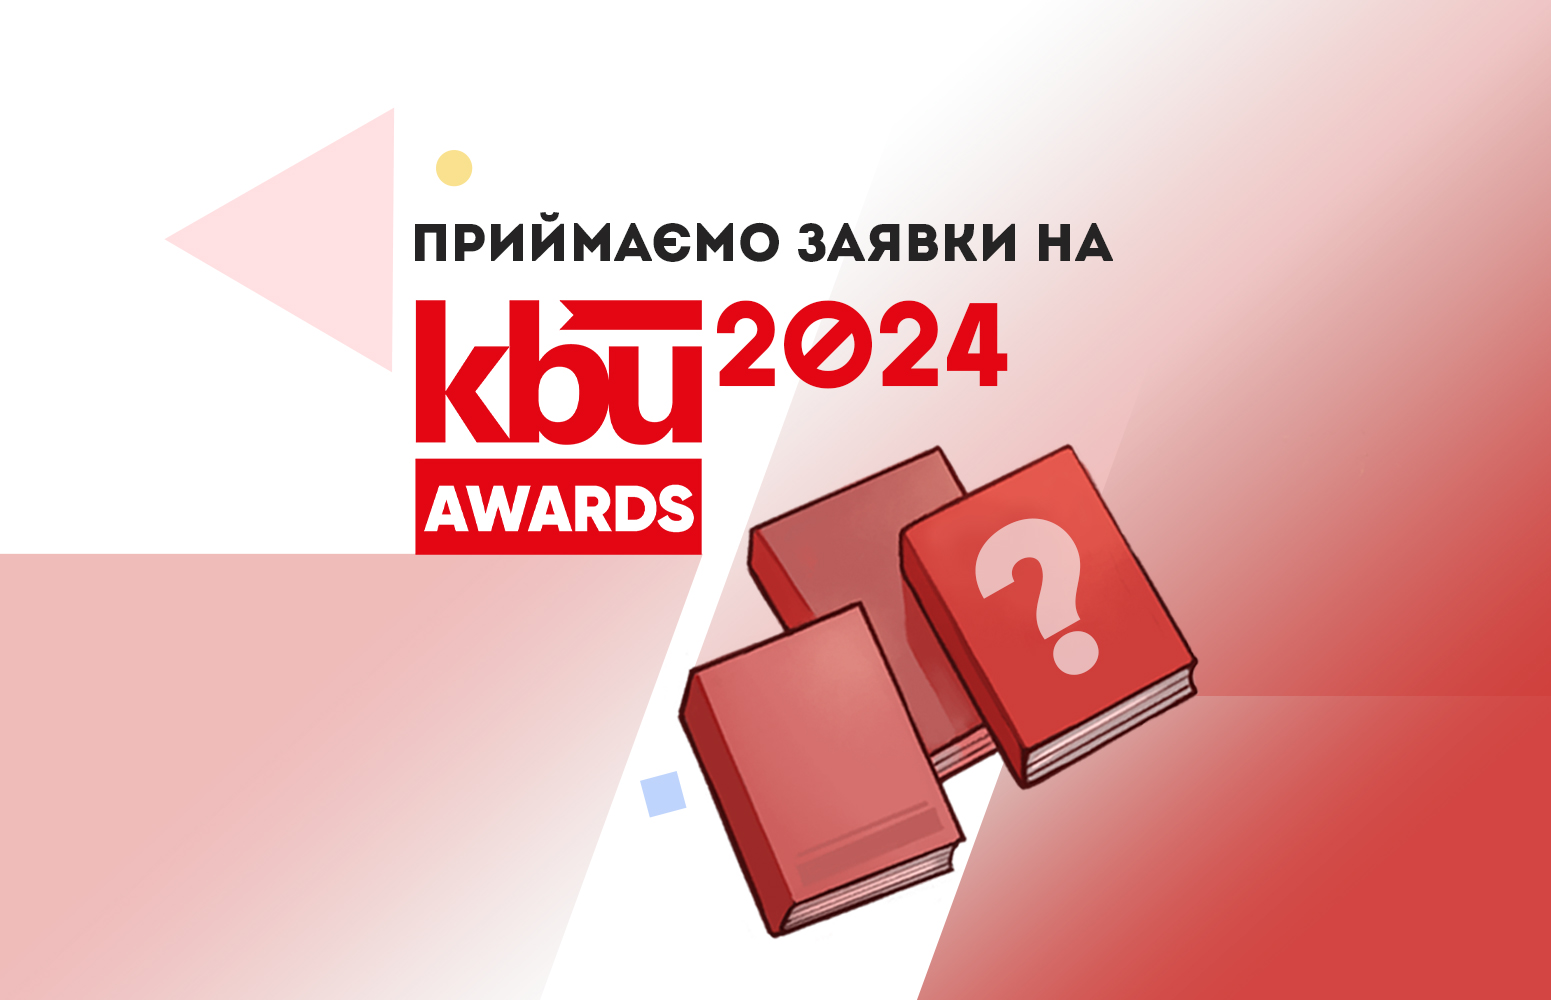 Приймаємо заявки на KBU AWARDS 2024!